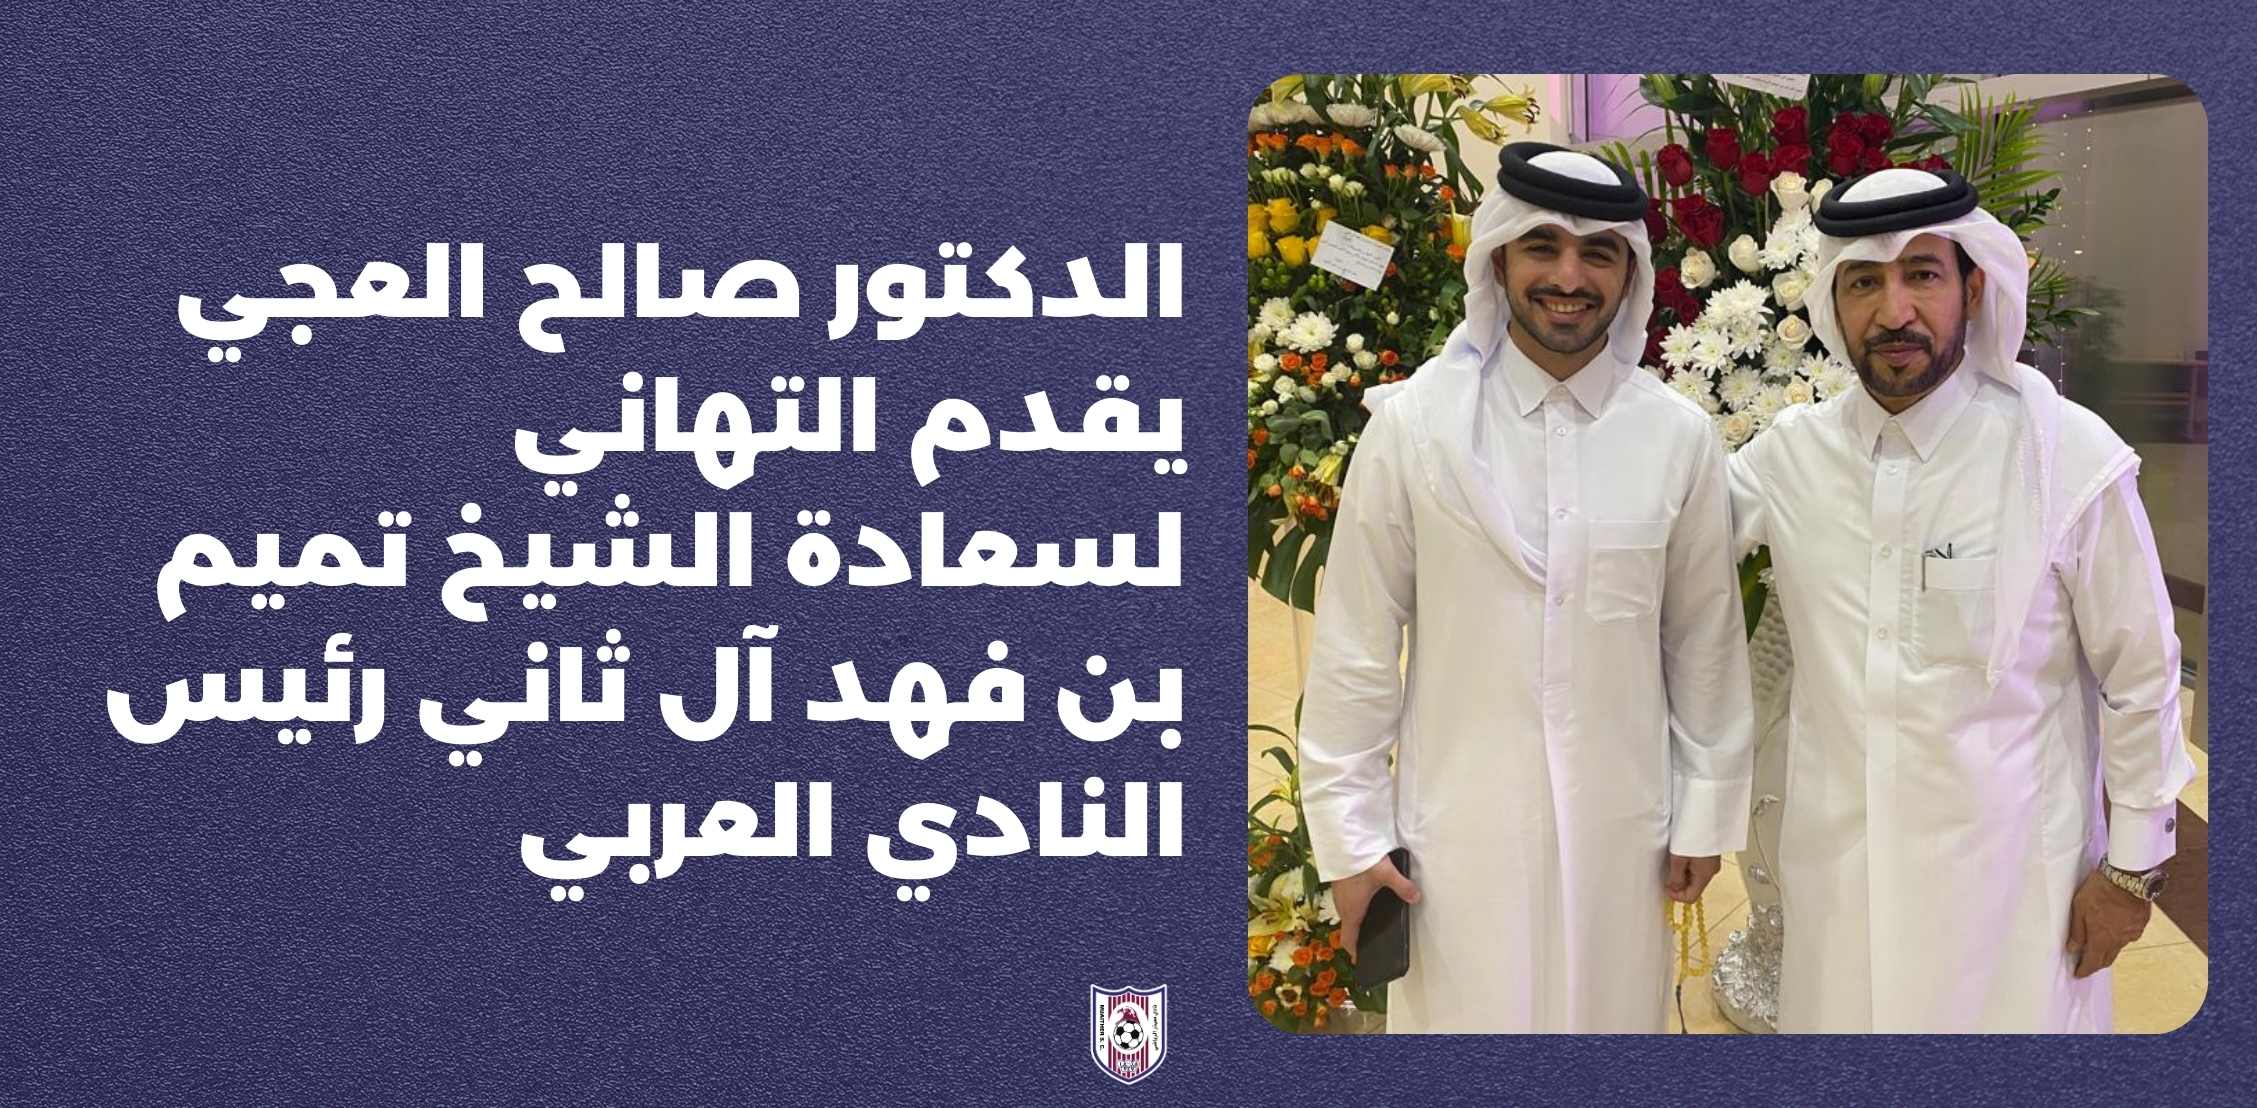 الدكتور صالح العجي يقدم التهاني لسعادة الشيخ تميم بن فهد آل ثاني رئيس النادي العربي